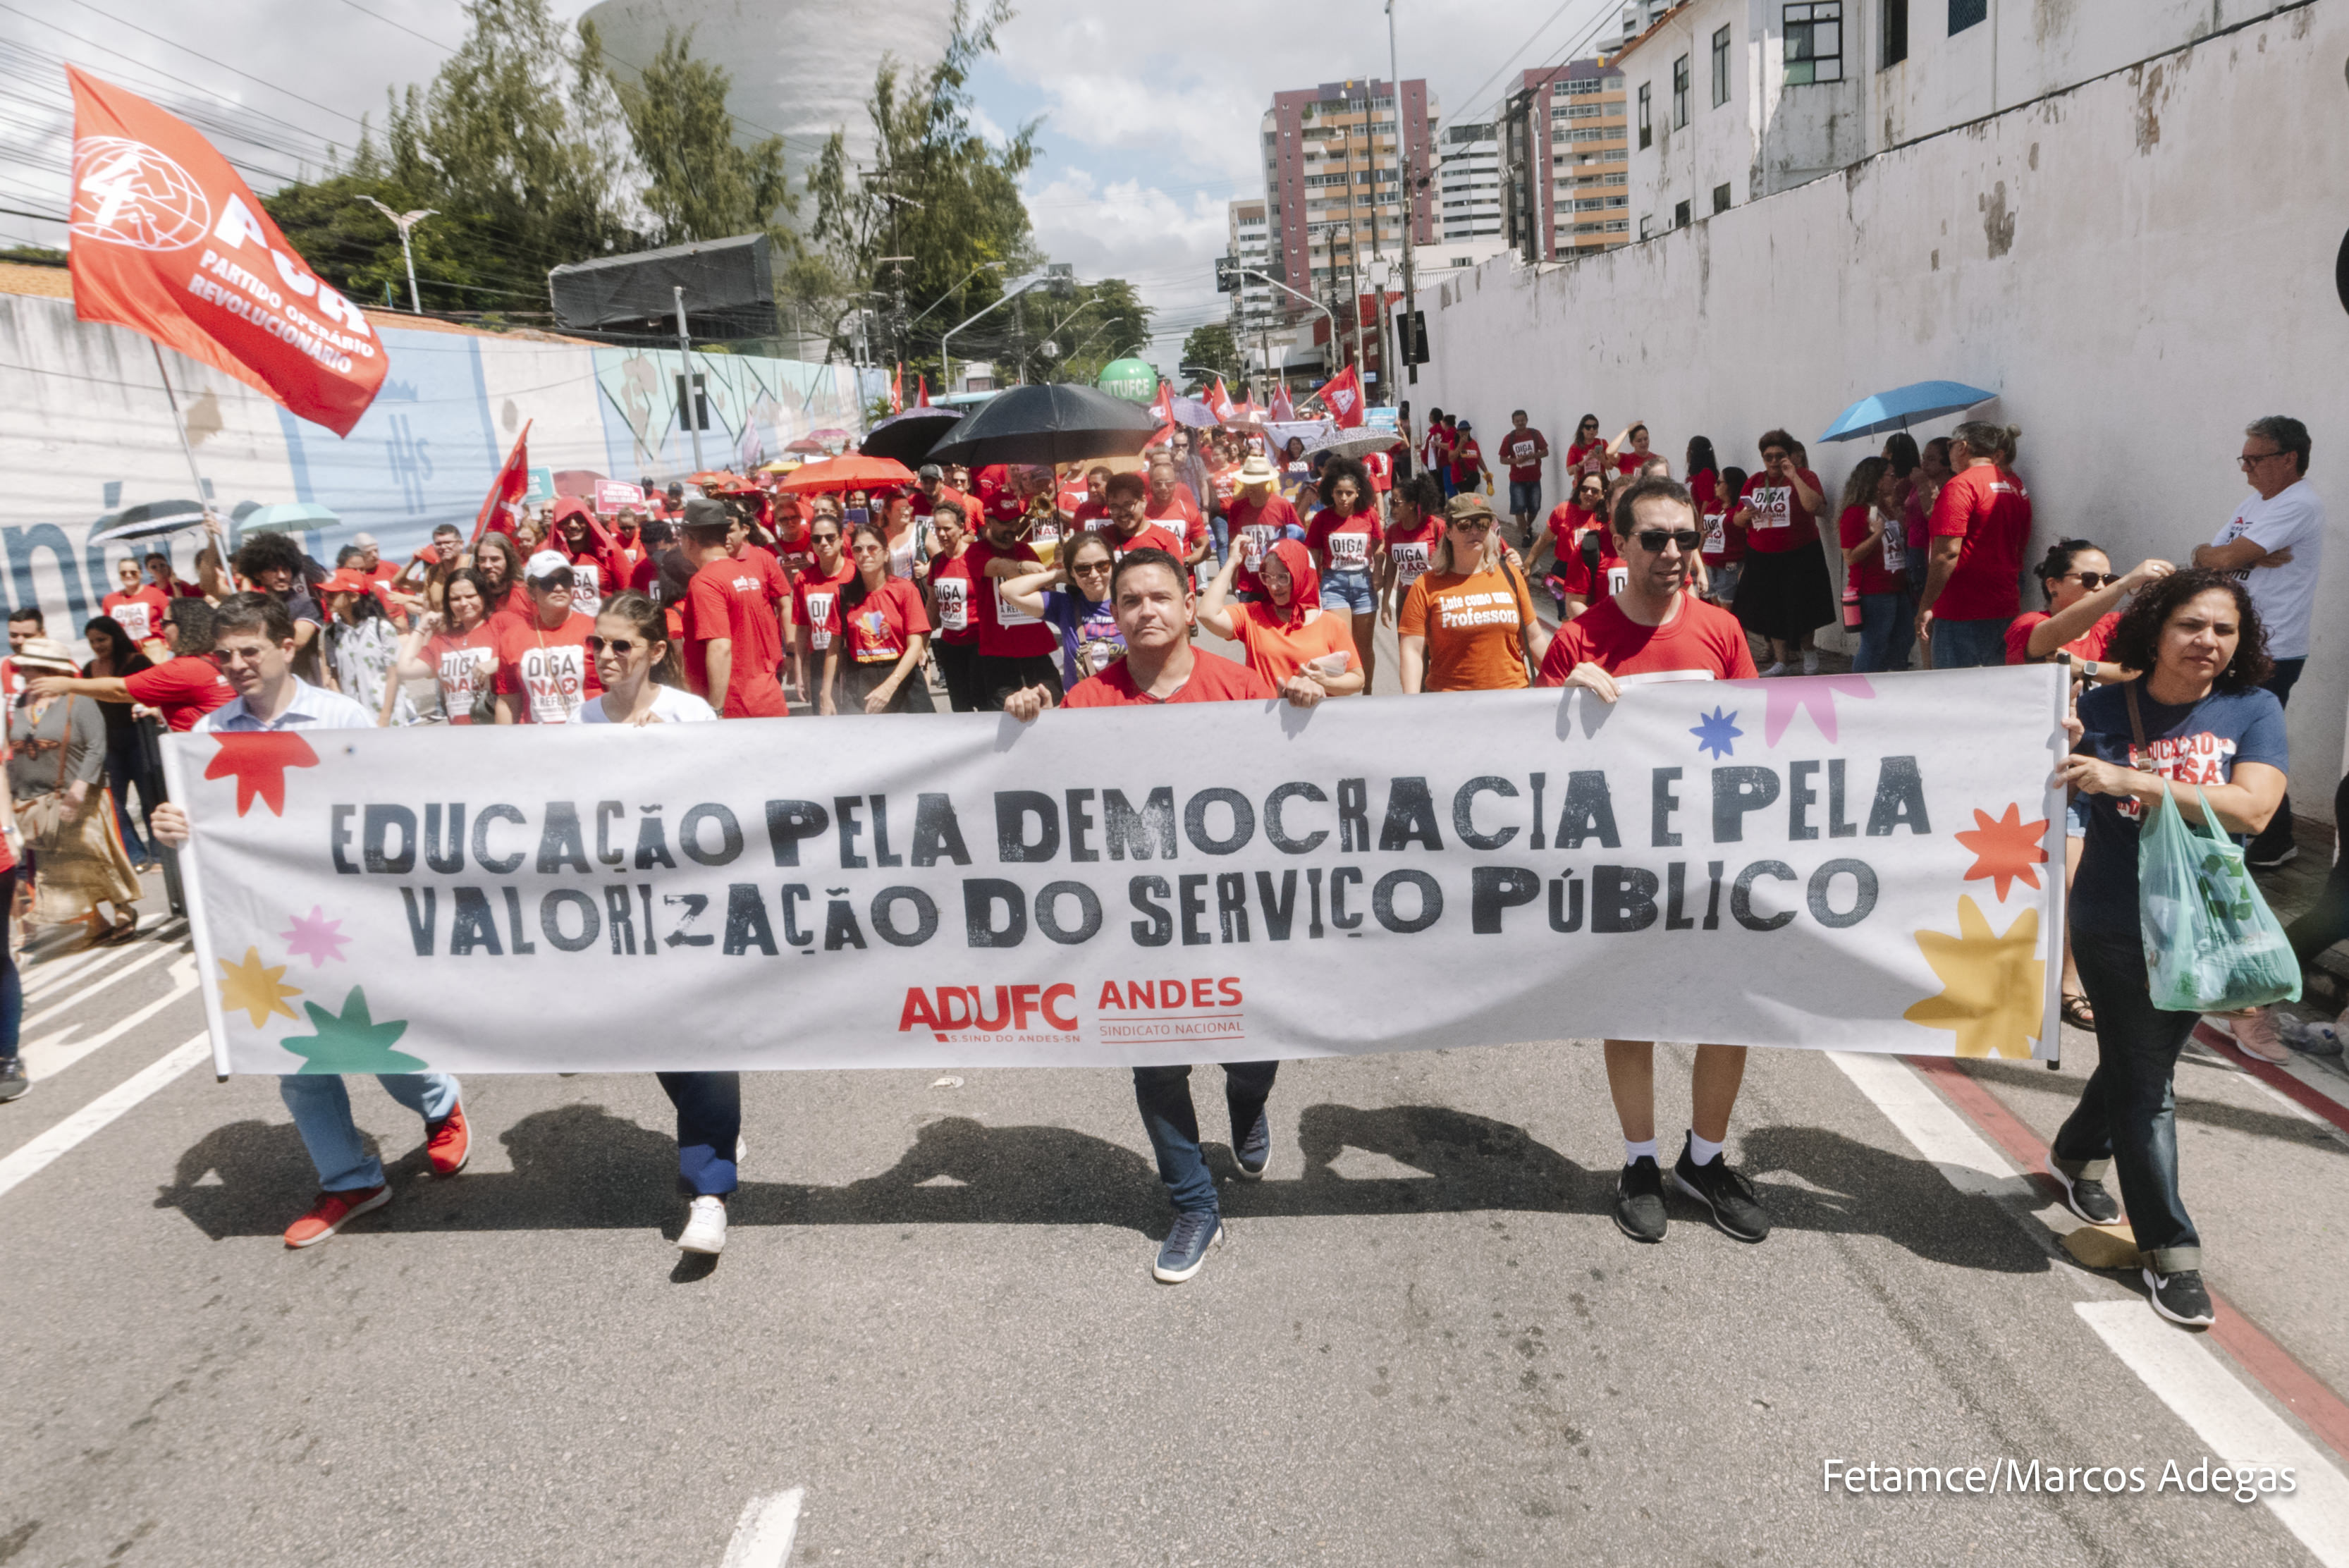 GREVE DA EDUCAÇÃO – Docentes vão às ruas na Marcha da Educação e reforçam combate à PEC 32 como pauta fundamental